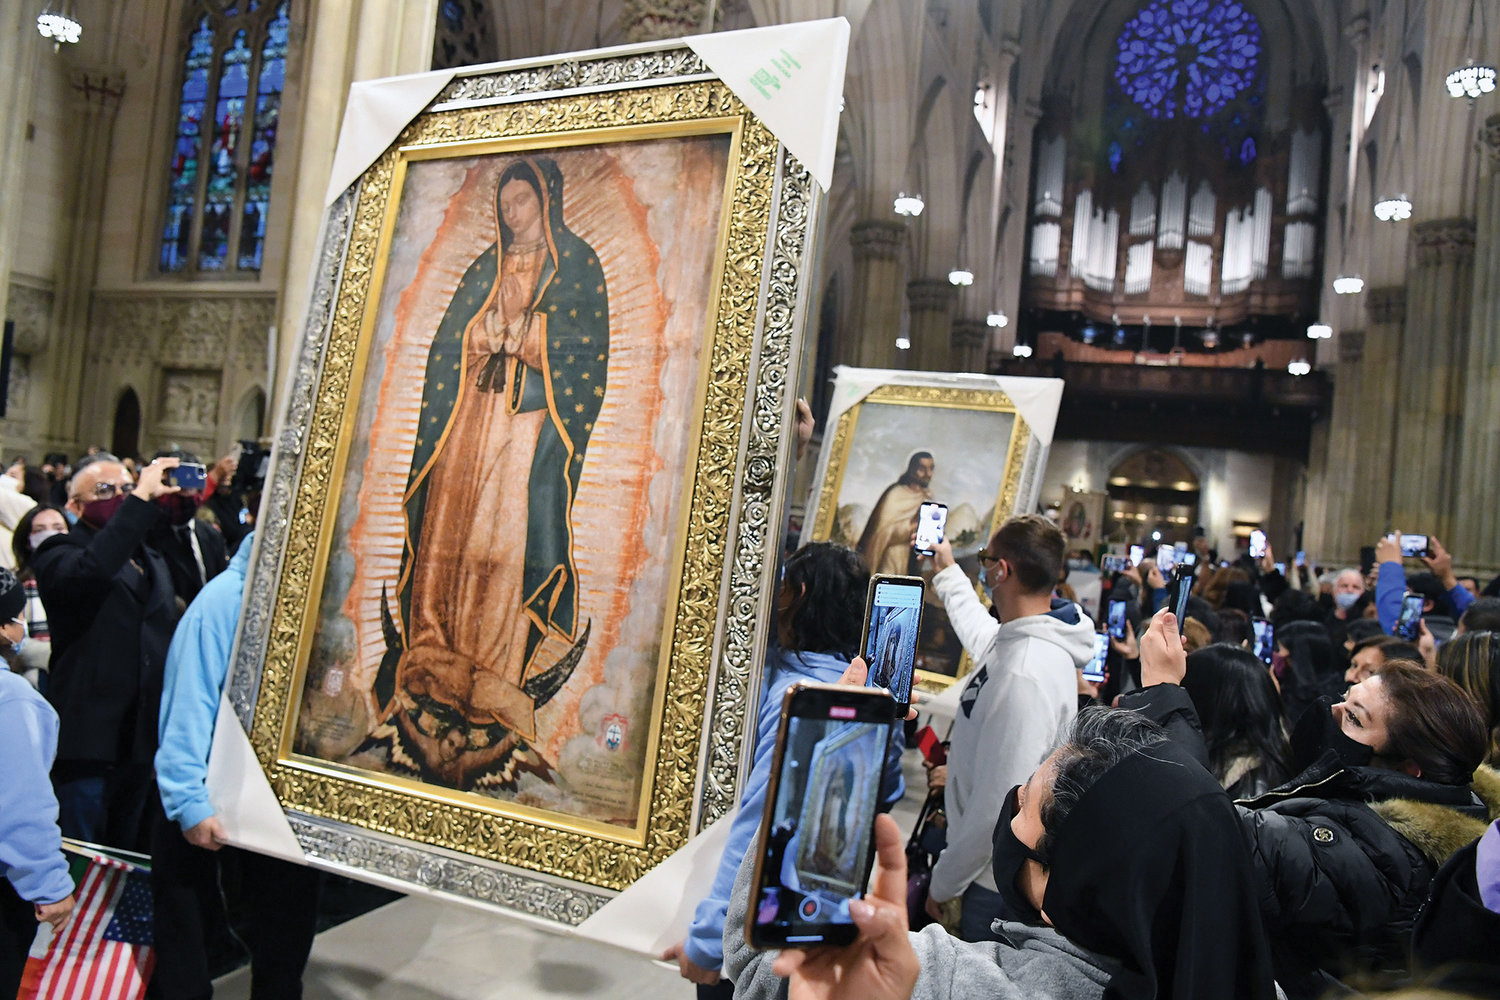 La procesión de entrada de la misa de Nuestra Señora de Guadalupe el diciembre pasado en la Catedral de San Patricio, arriba, incluyó un retrato grande de María y uno de San Juan Diego. Los retratos fueron regalos a la Arquidiócesis de Nueva York de parte de la Conferencia Episcopal de México.